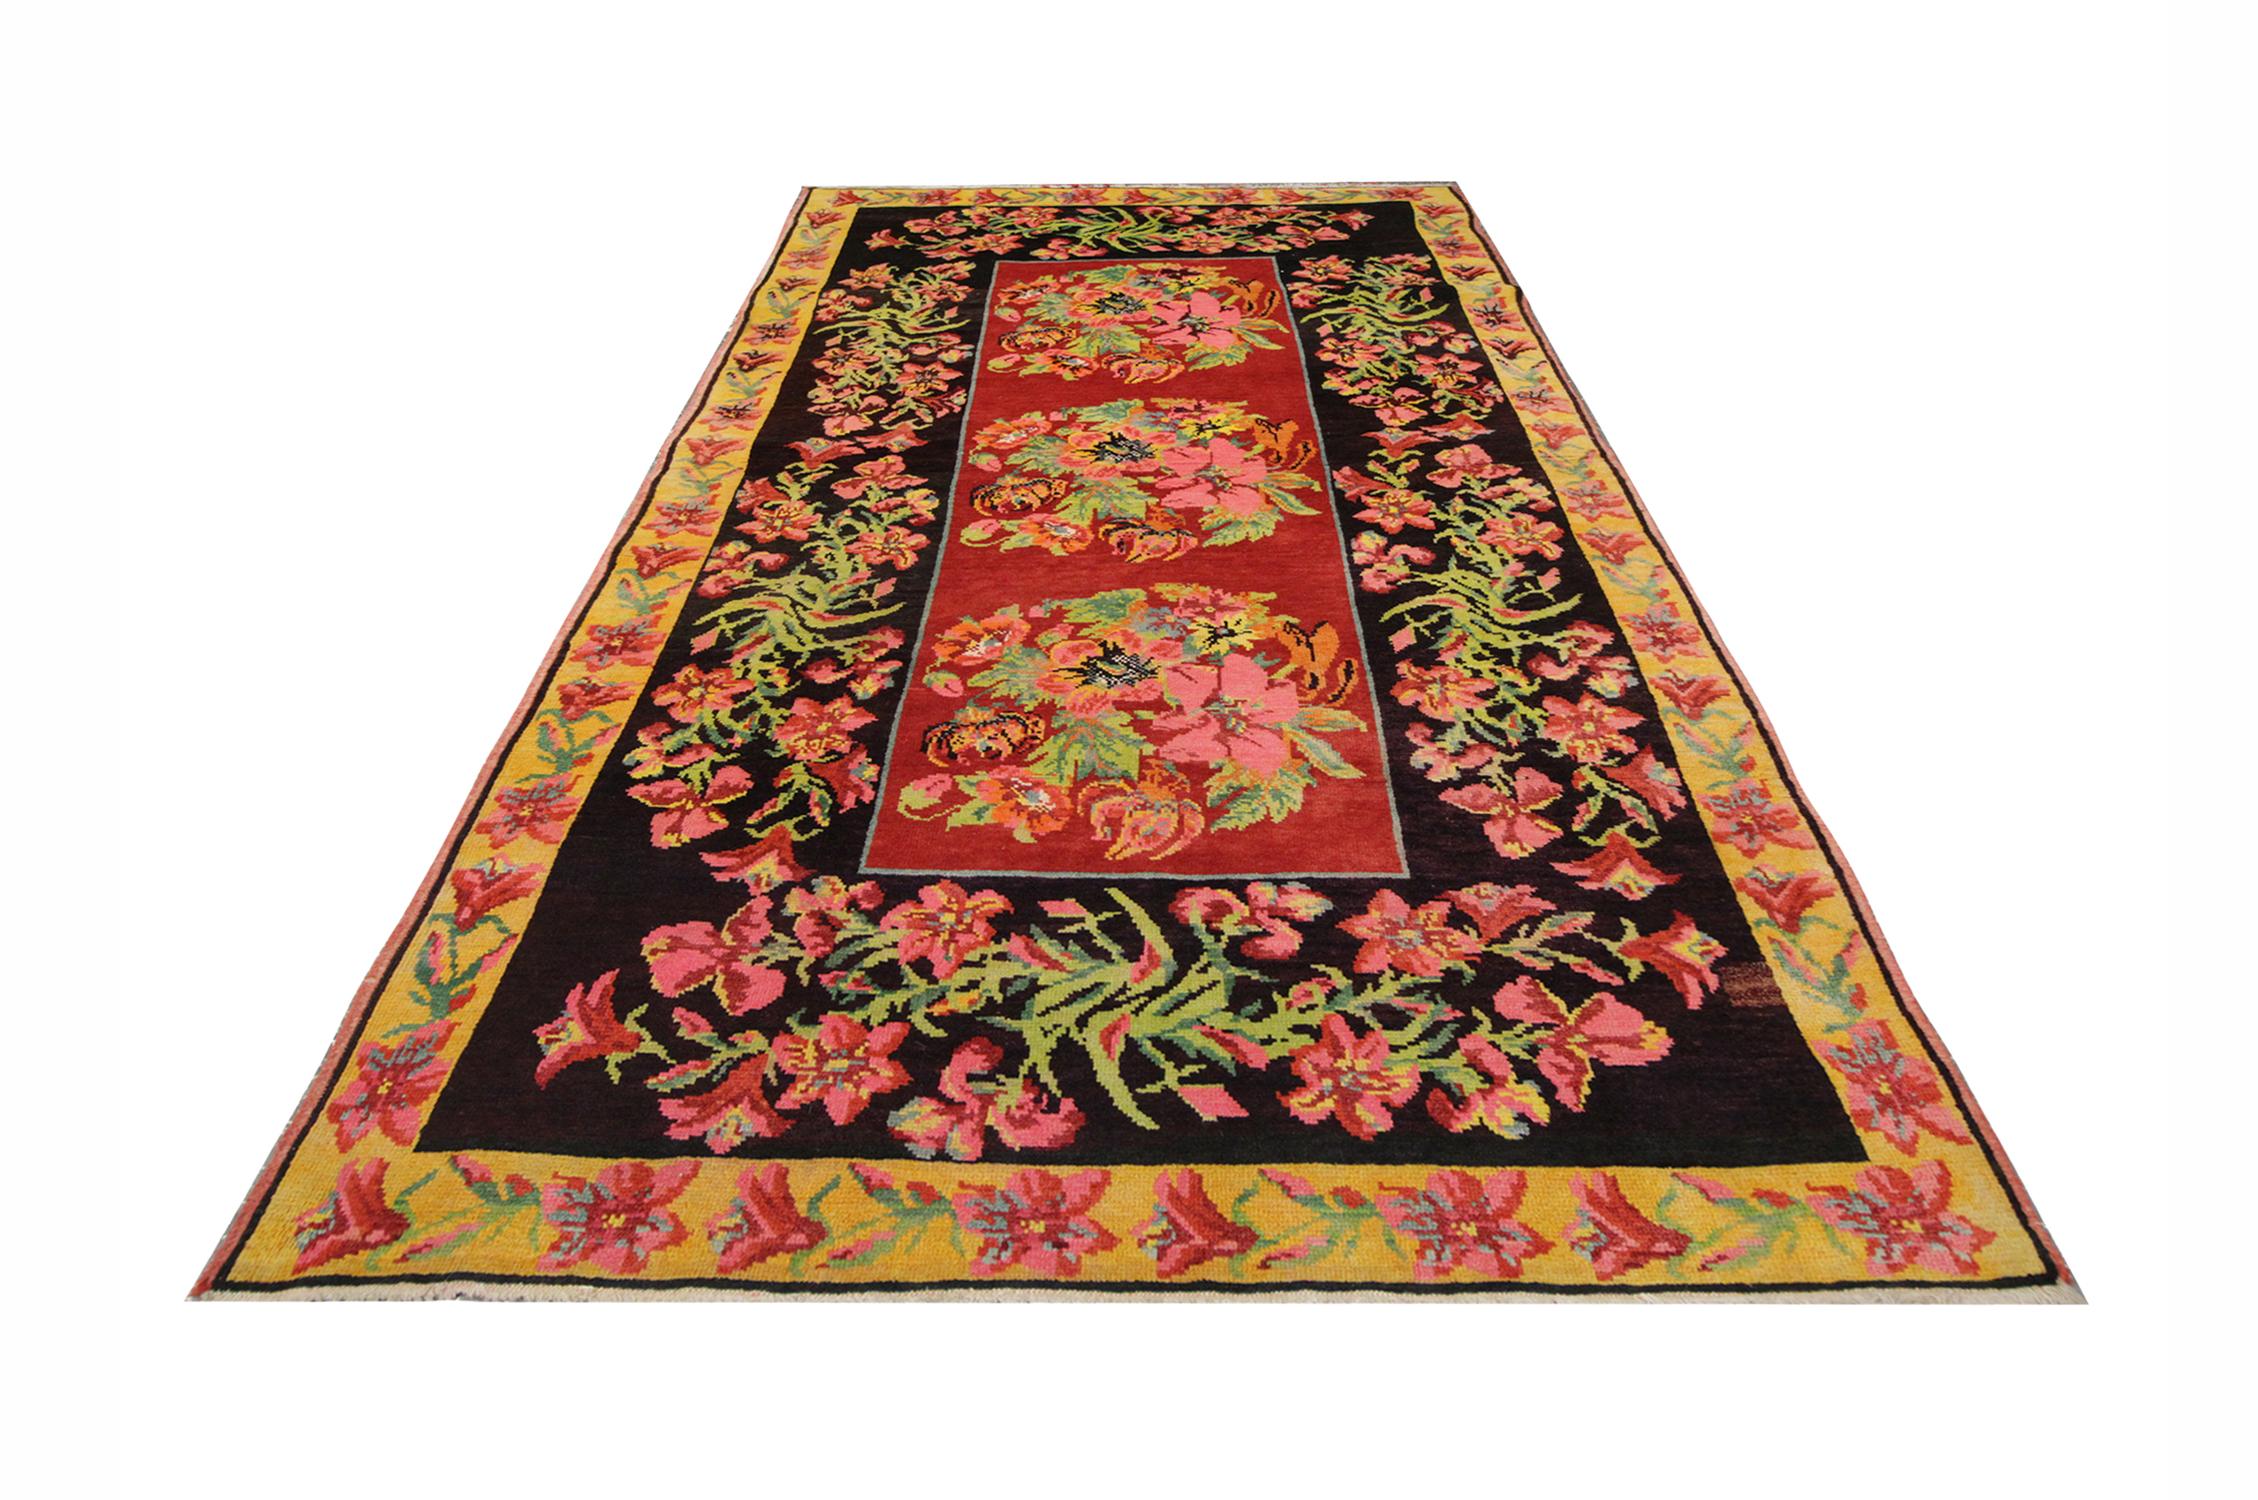 Ce tapis coloré a été tissé et teint à la main selon des techniques traditionnelles de teinture végétale au Karabagh. Utilisant uniquement la laine et le coton de la plus haute qualité, ce tapis à tissage plat présente des couleurs bleues, orange,